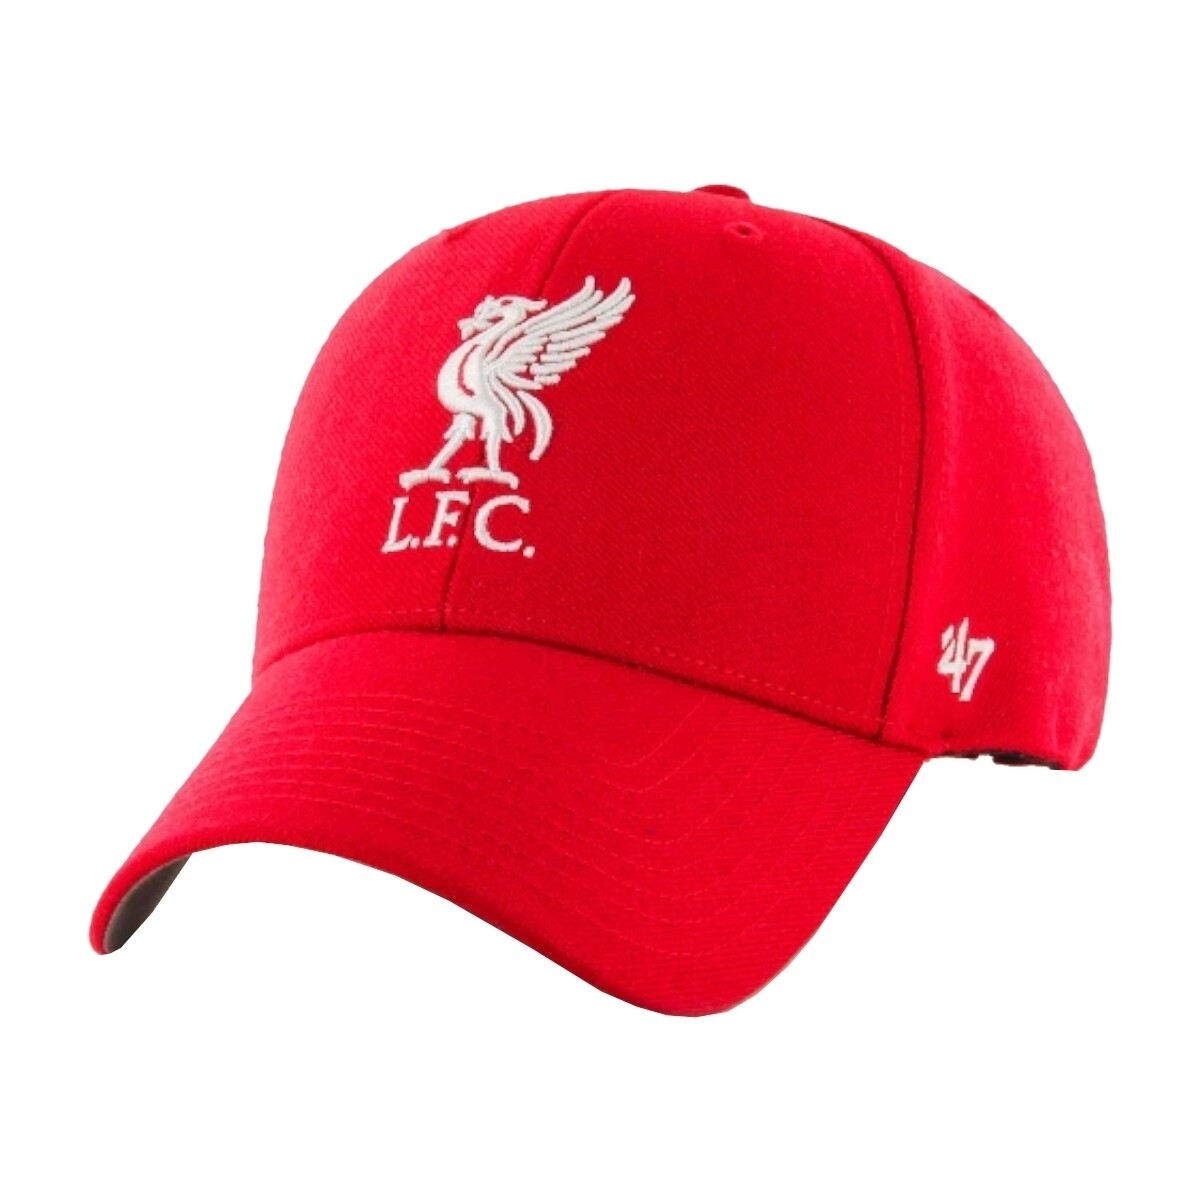 Accessoires Herren Schirmmütze '47 Brand EPL FC Liverpool Cap Rot